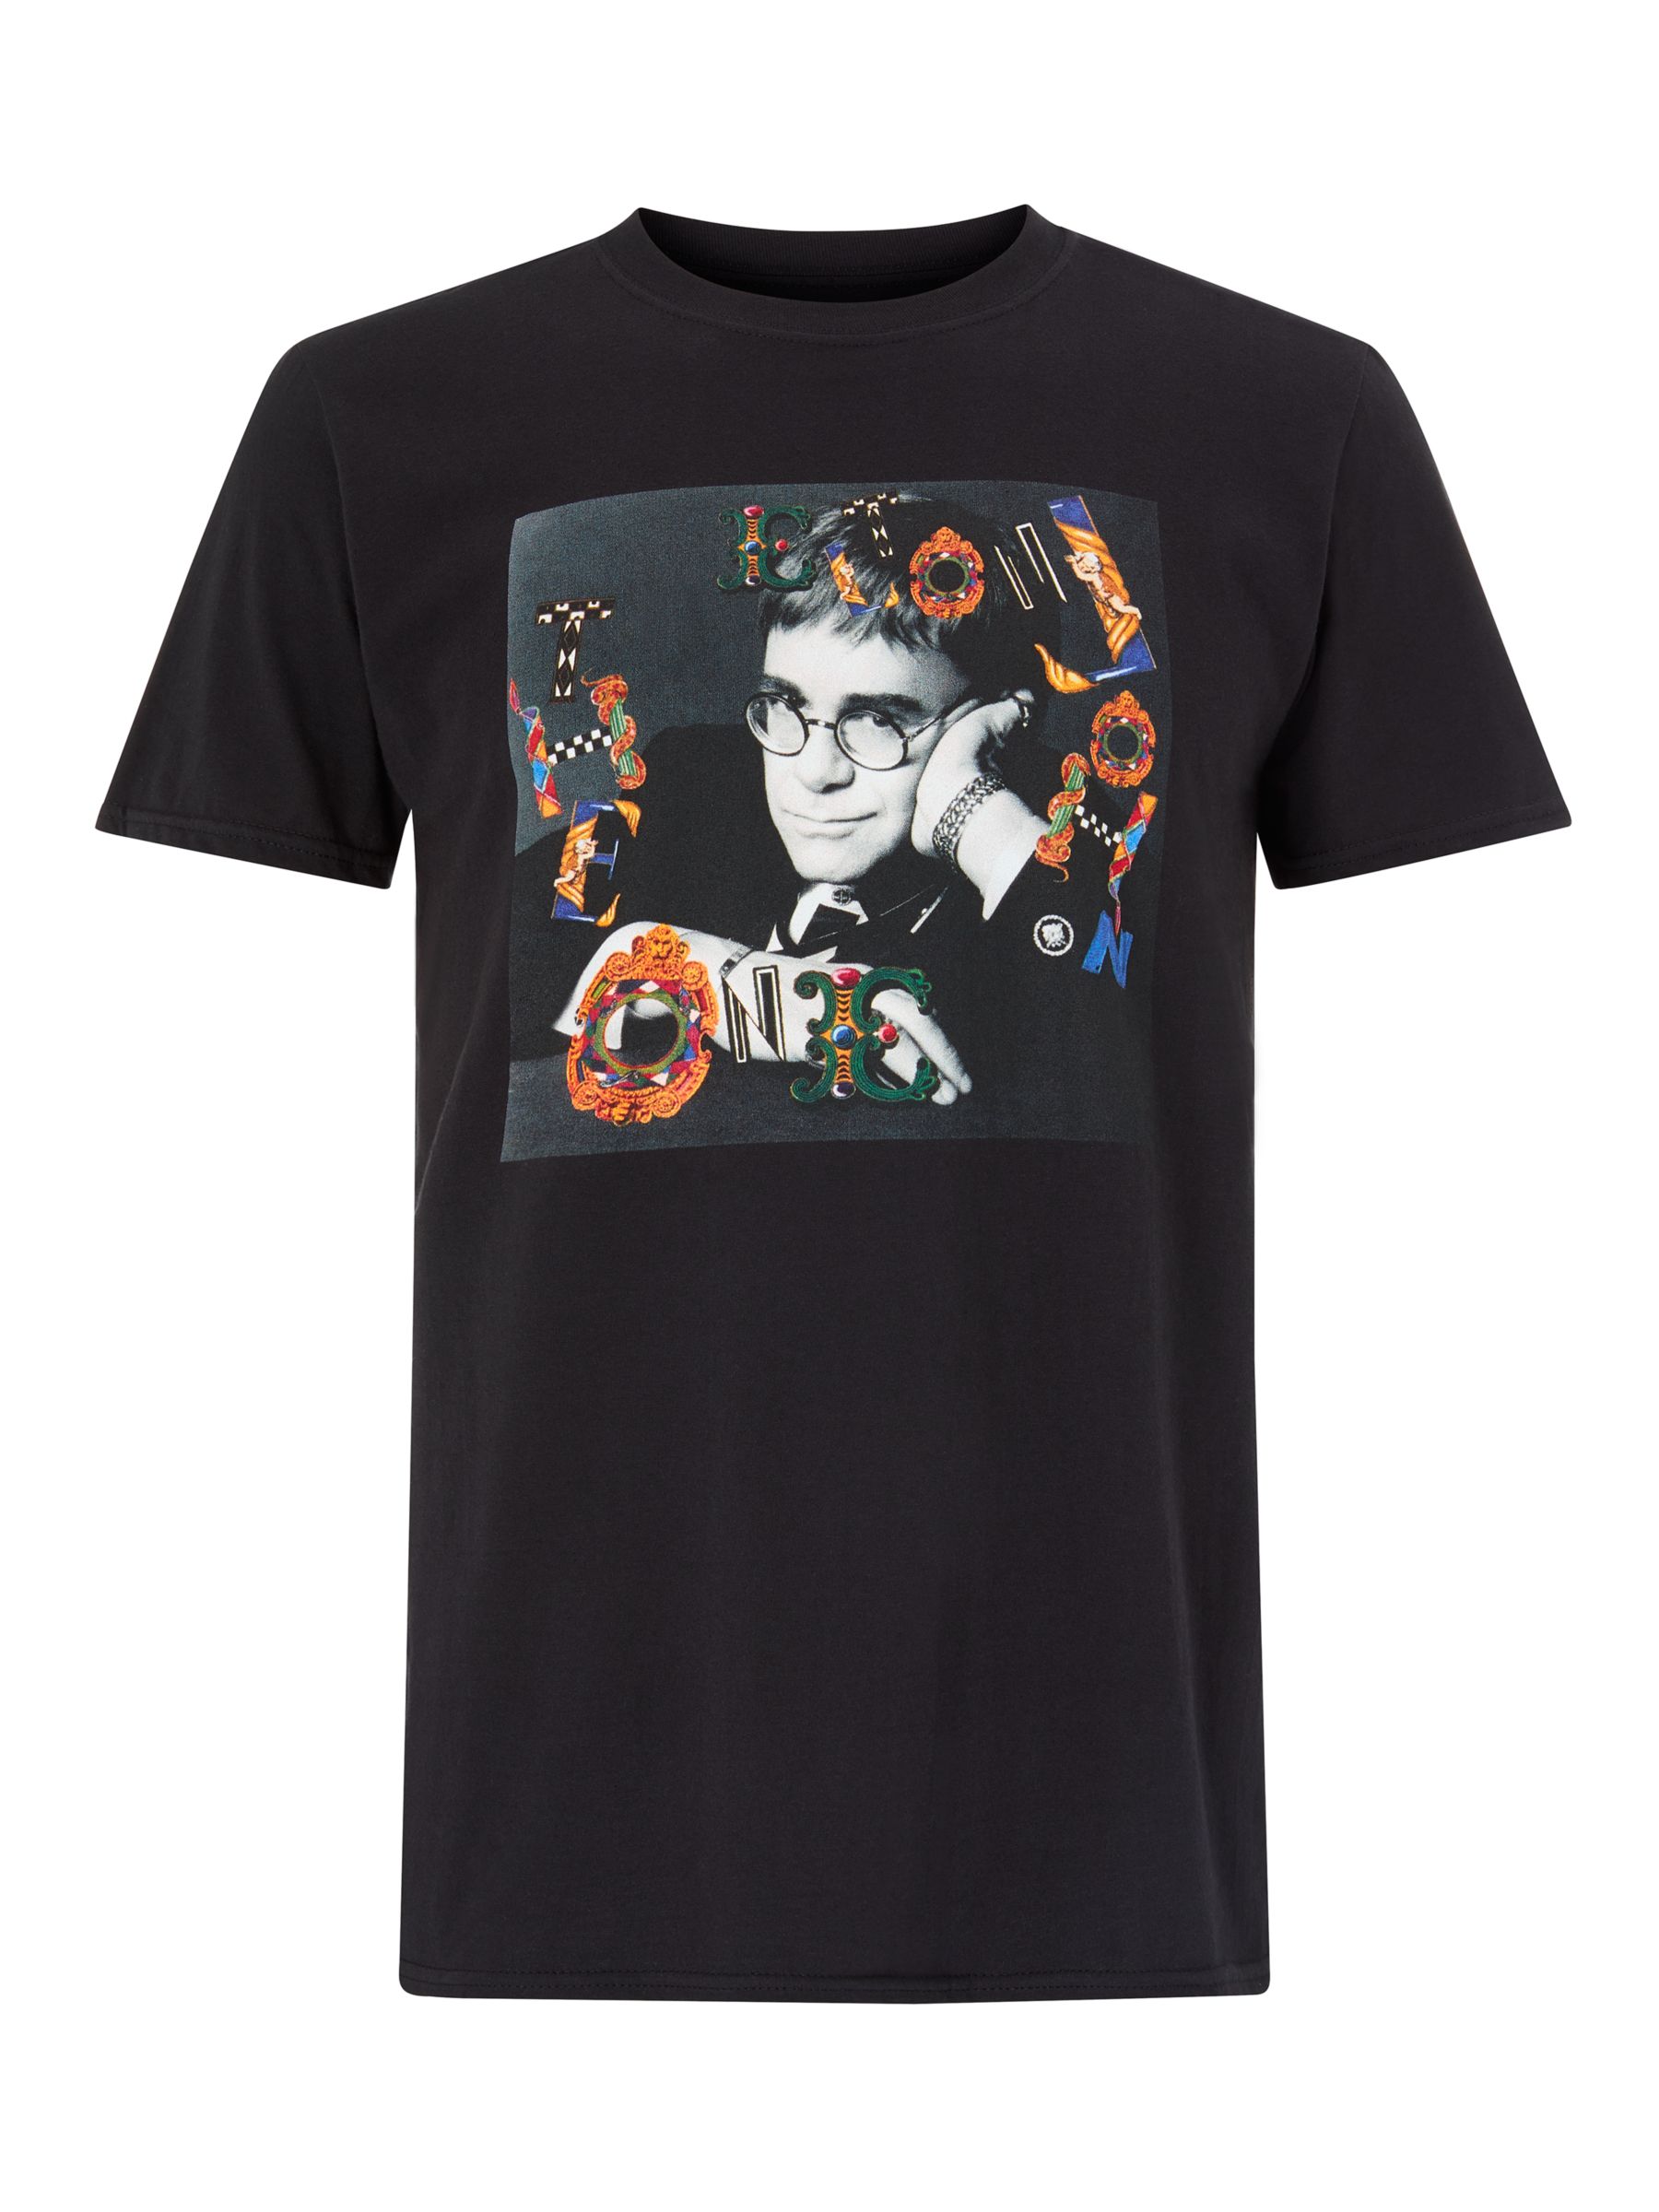 Elton John Vintage Image Graphic T-Shirt, Black at John Lewis & Partners